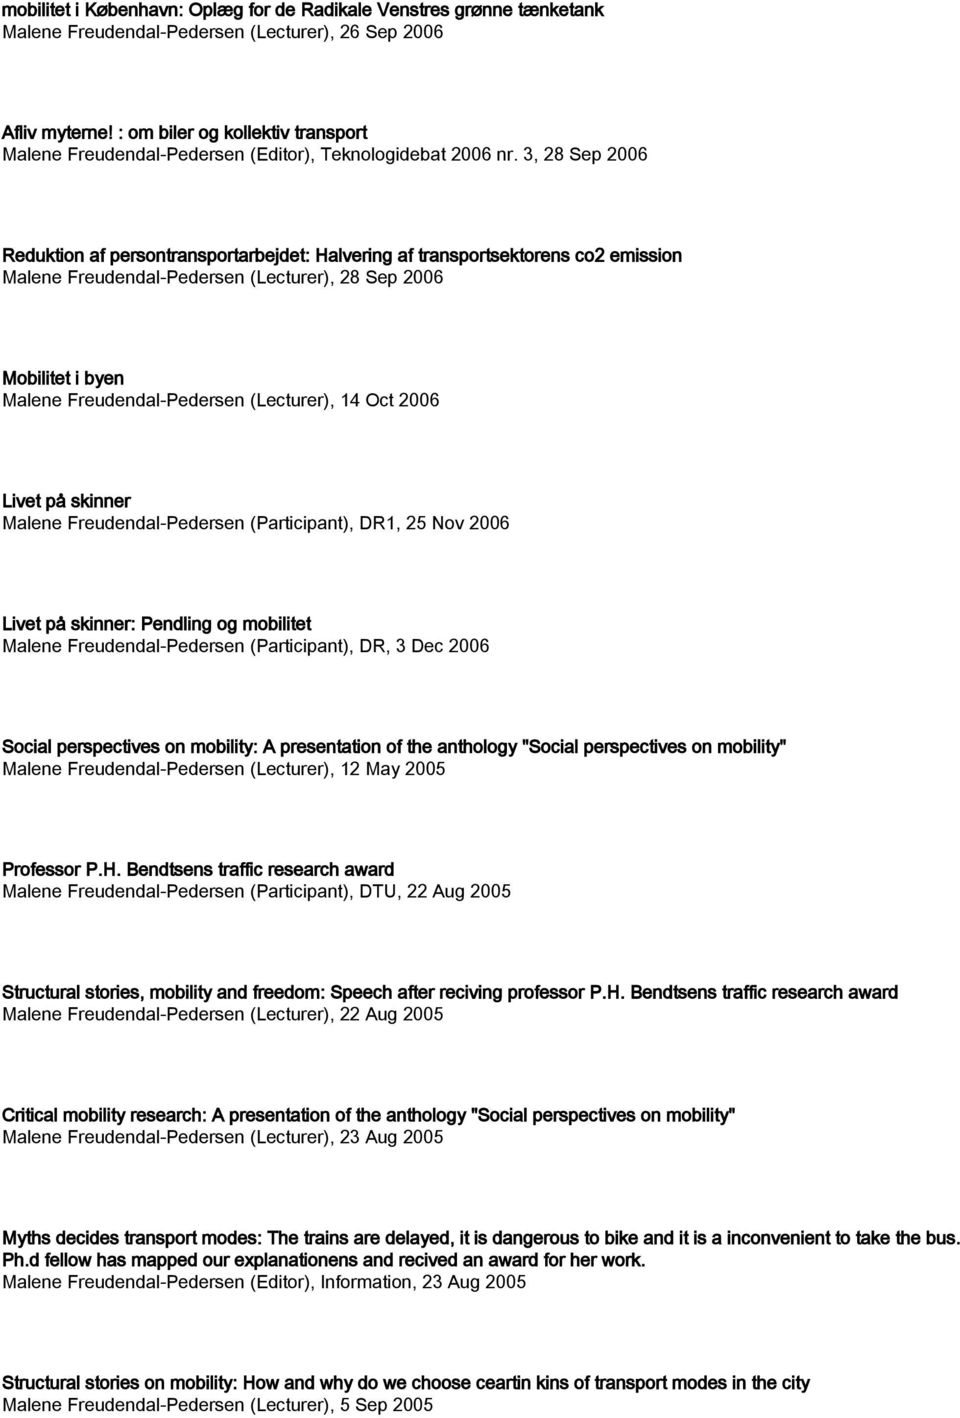 25 Nov 2006 Livet på skinner: Pendling og mobilitet (Participant), DR, 3 Dec 2006 Social perspectives on mobility: A presentation of the anthology "Social perspectives on mobility" (Lecturer), 12 May